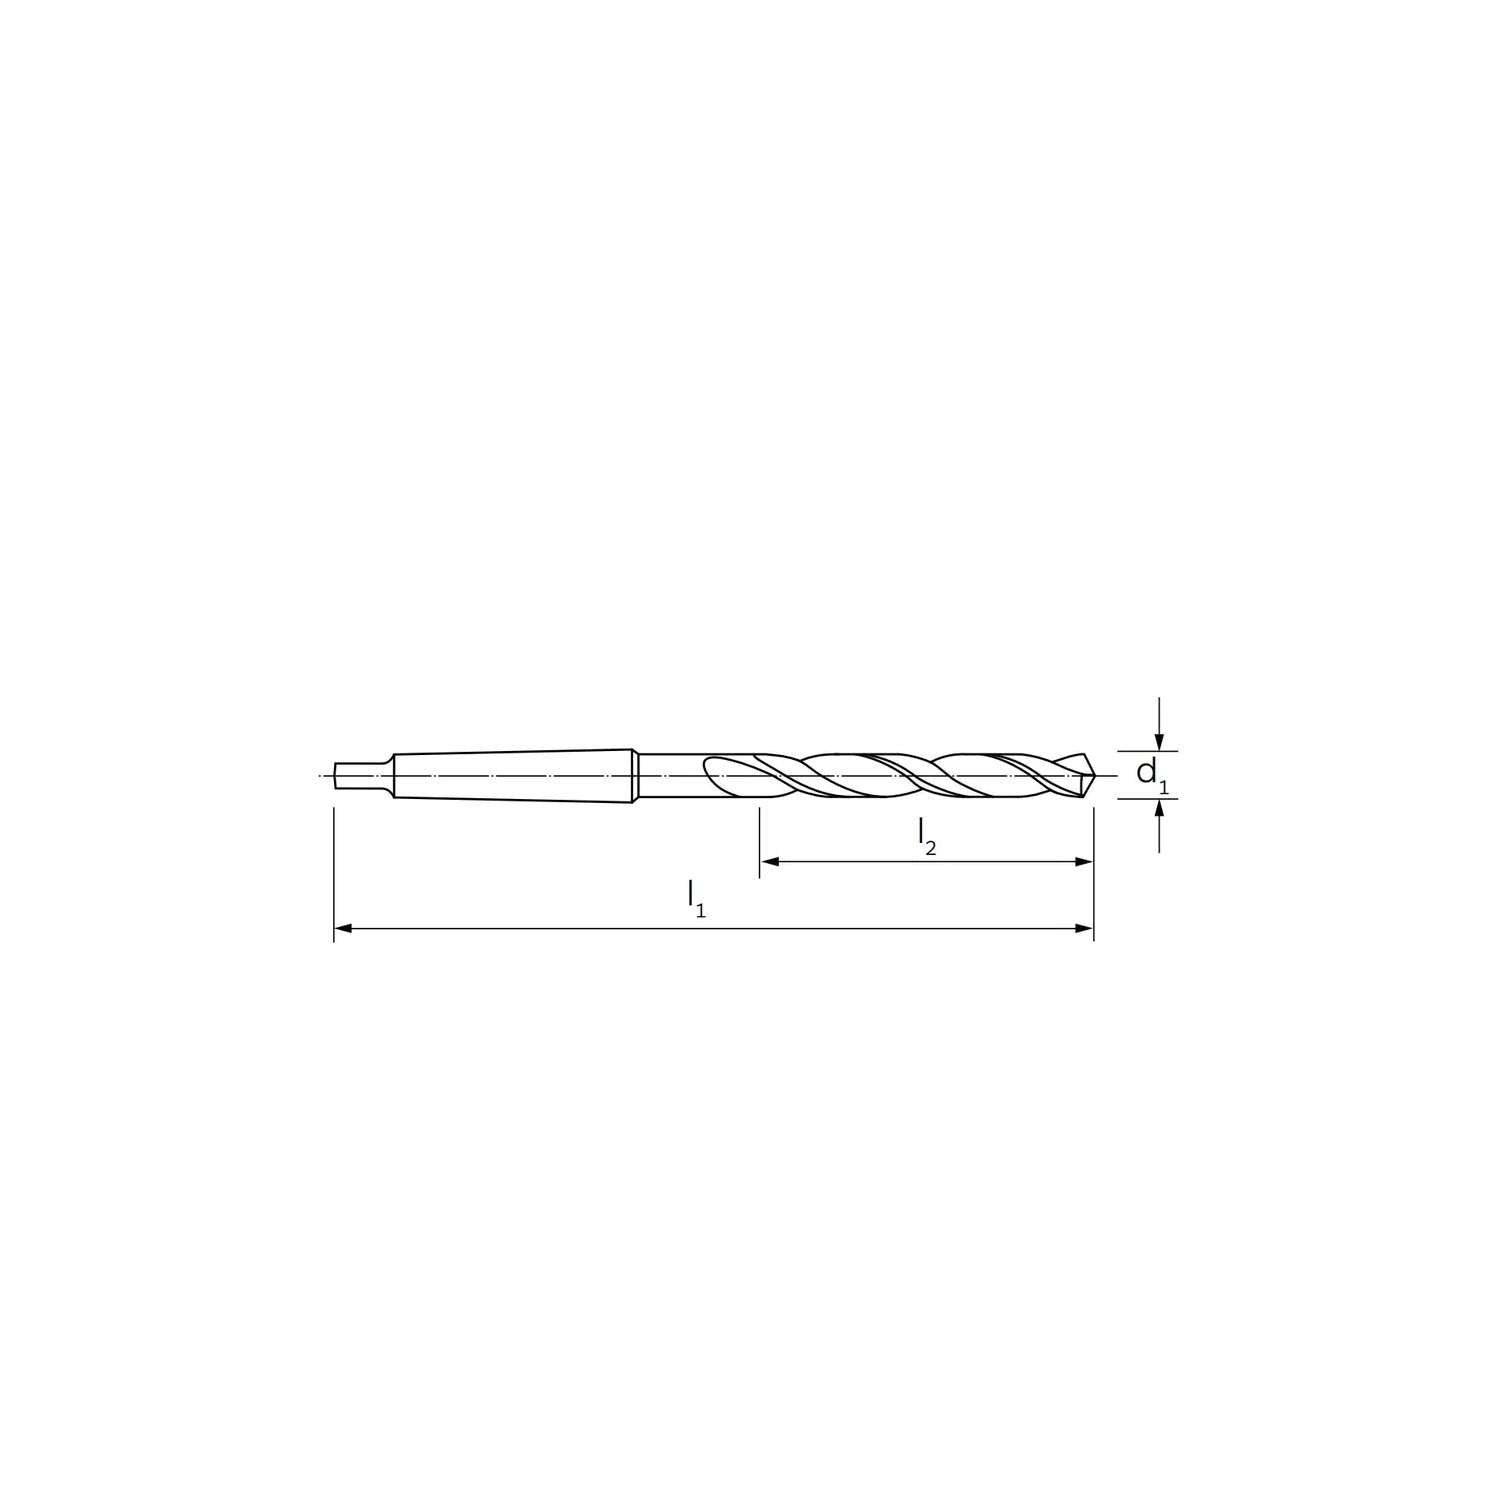 Punta conica elicoidale specifica per alluminio DIN 345 tipo W 13 - ILIX